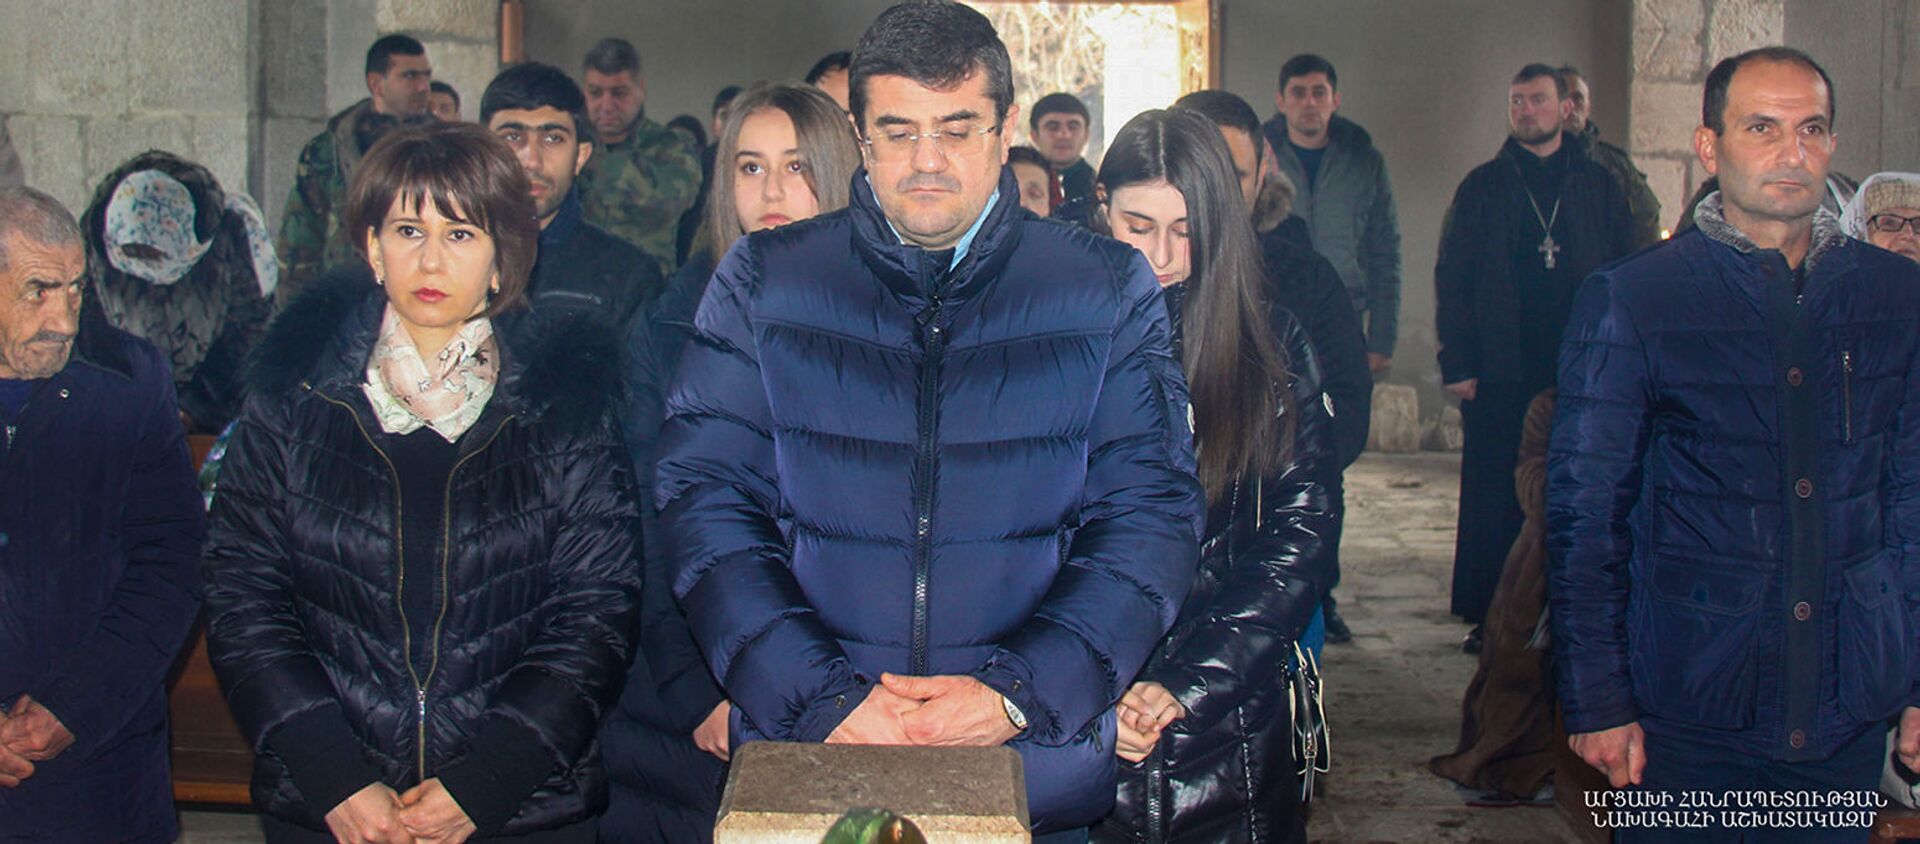 Президент Карабаха Араик Арутюнян с семьей посетил Святую литургию в монастыре Амараса (21 февраля 2021). Карабах - Sputnik Արմենիա, 1920, 21.02.2021